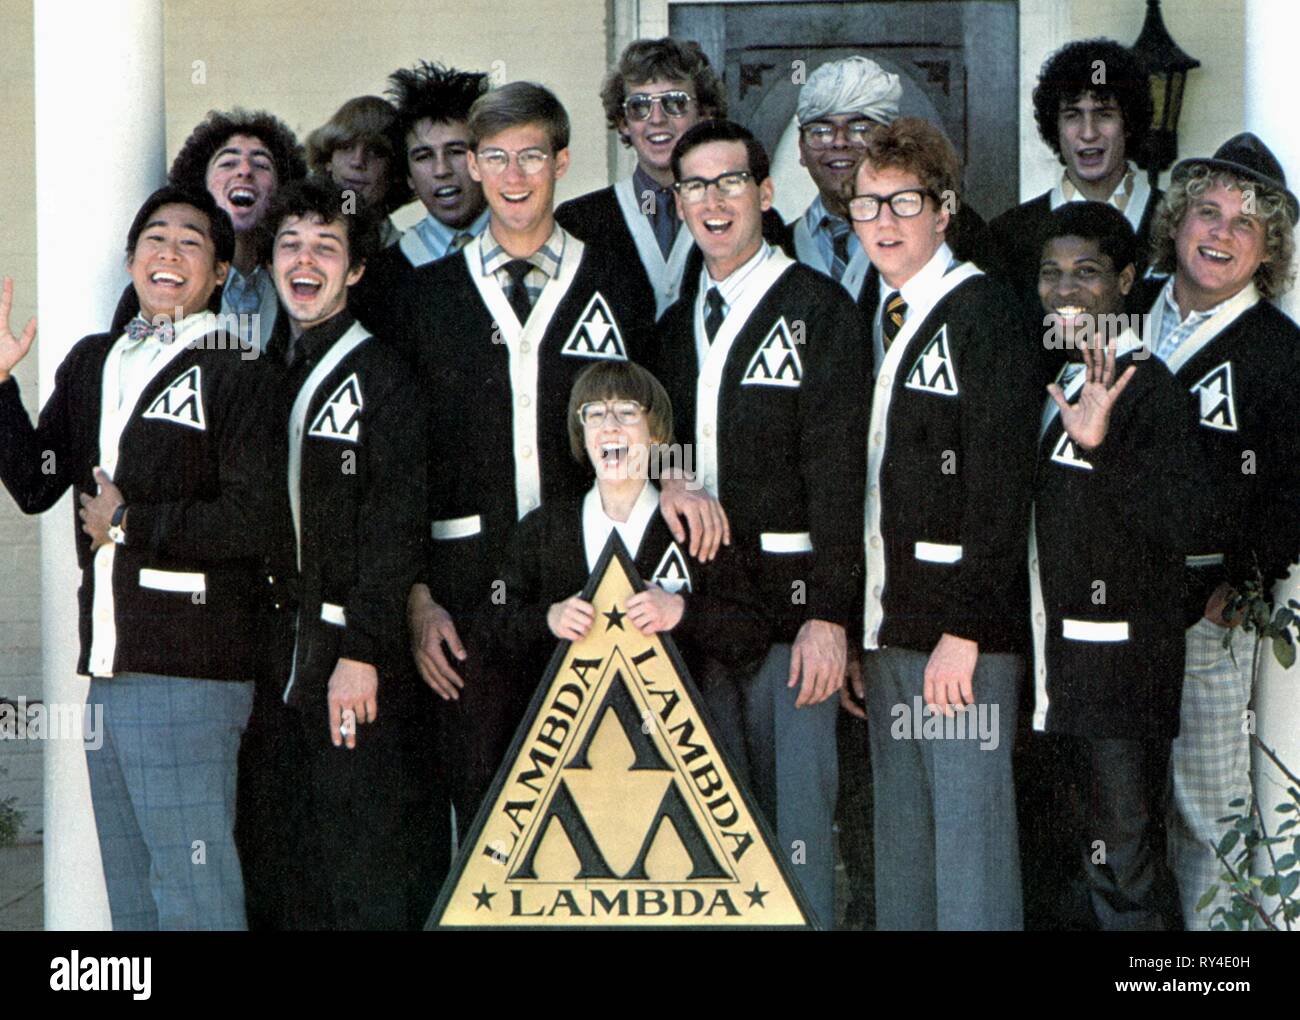 EDWARDS,CARRADINE, REVENGE OF THE NERDS, 1984 Stock Photo